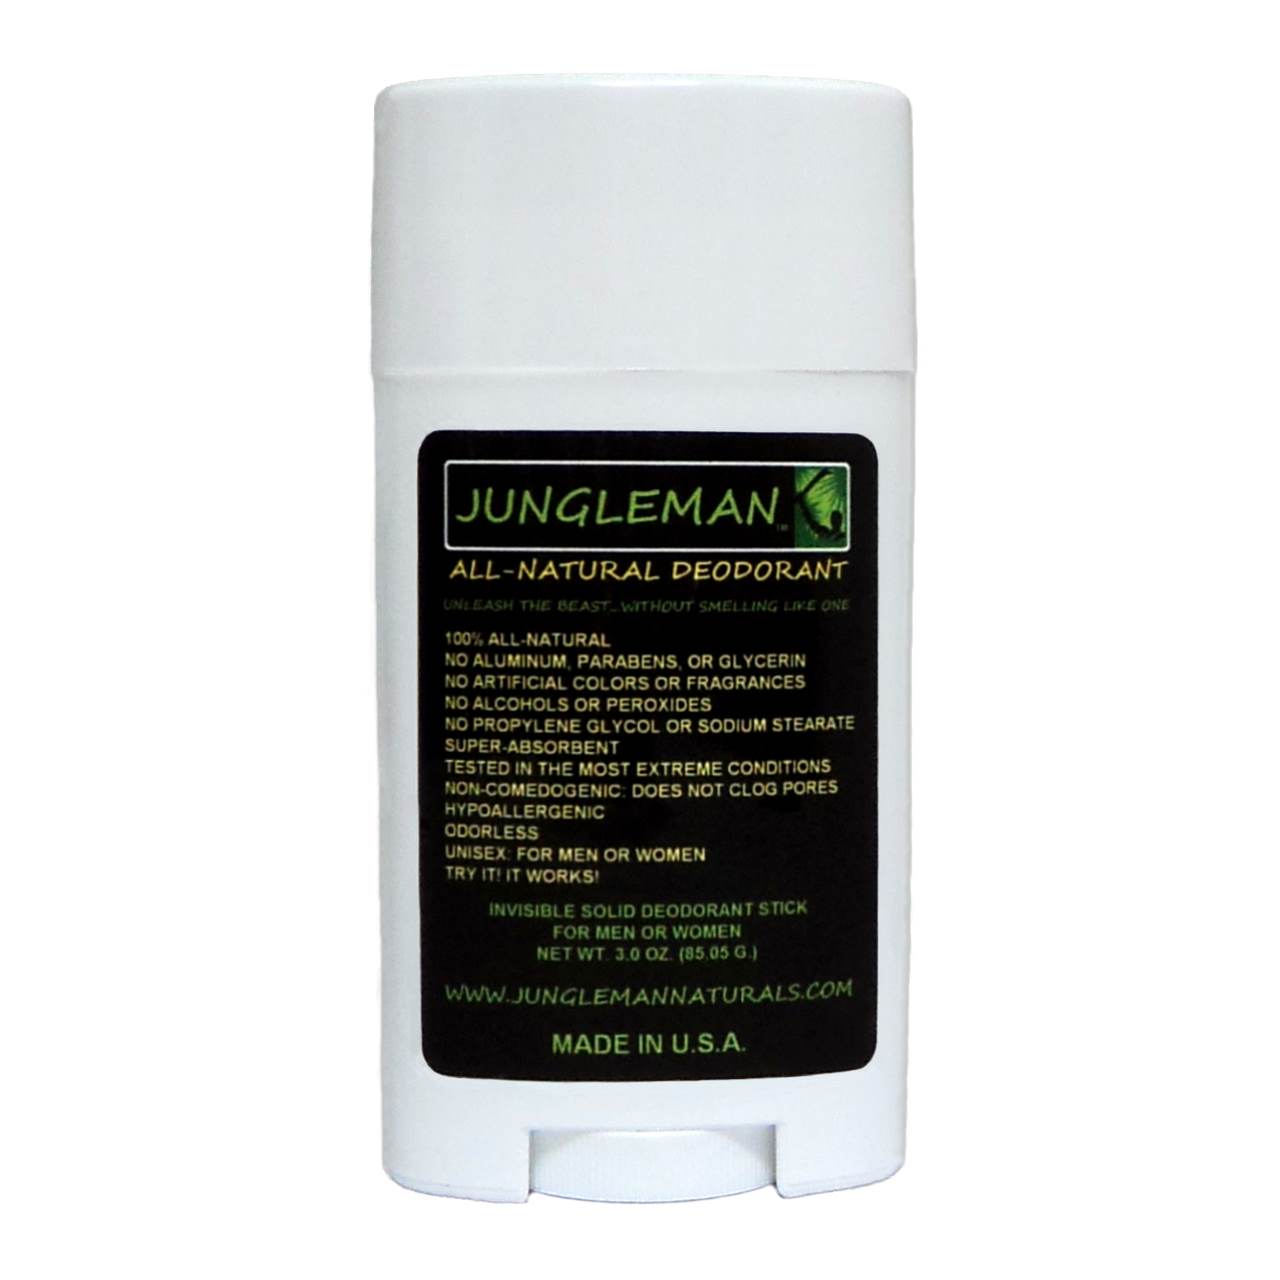 Jungleman All-Natural Deodorant